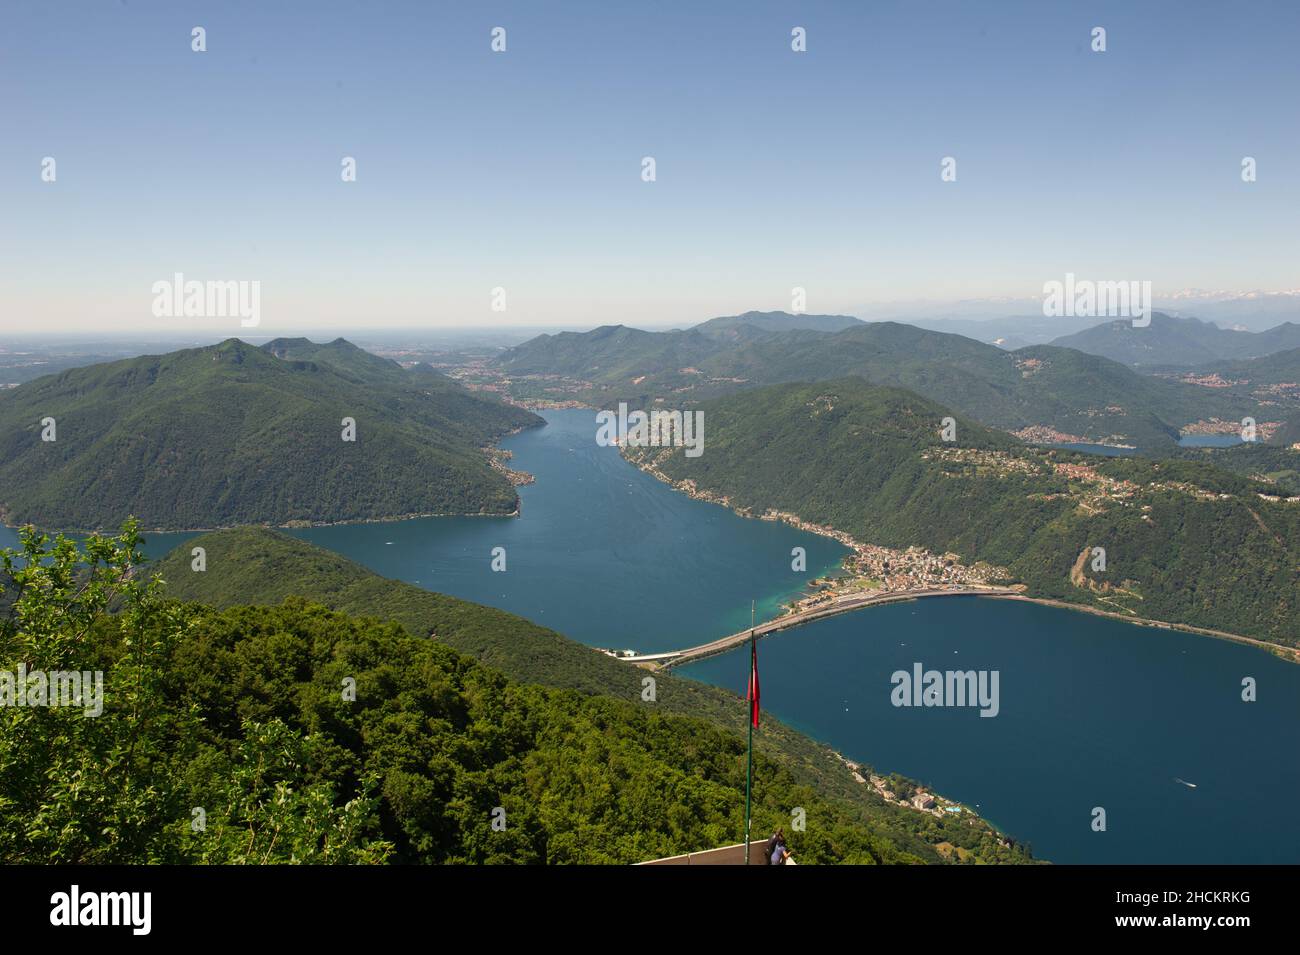 Europe, Italie, Como Lanzo d'Intelvi, Val d'Intelvi, vue de Sighignola (Italie) sur le lac de Lugano (Suisse).En bas à droite Porto Ceresio.Meli Banque D'Images